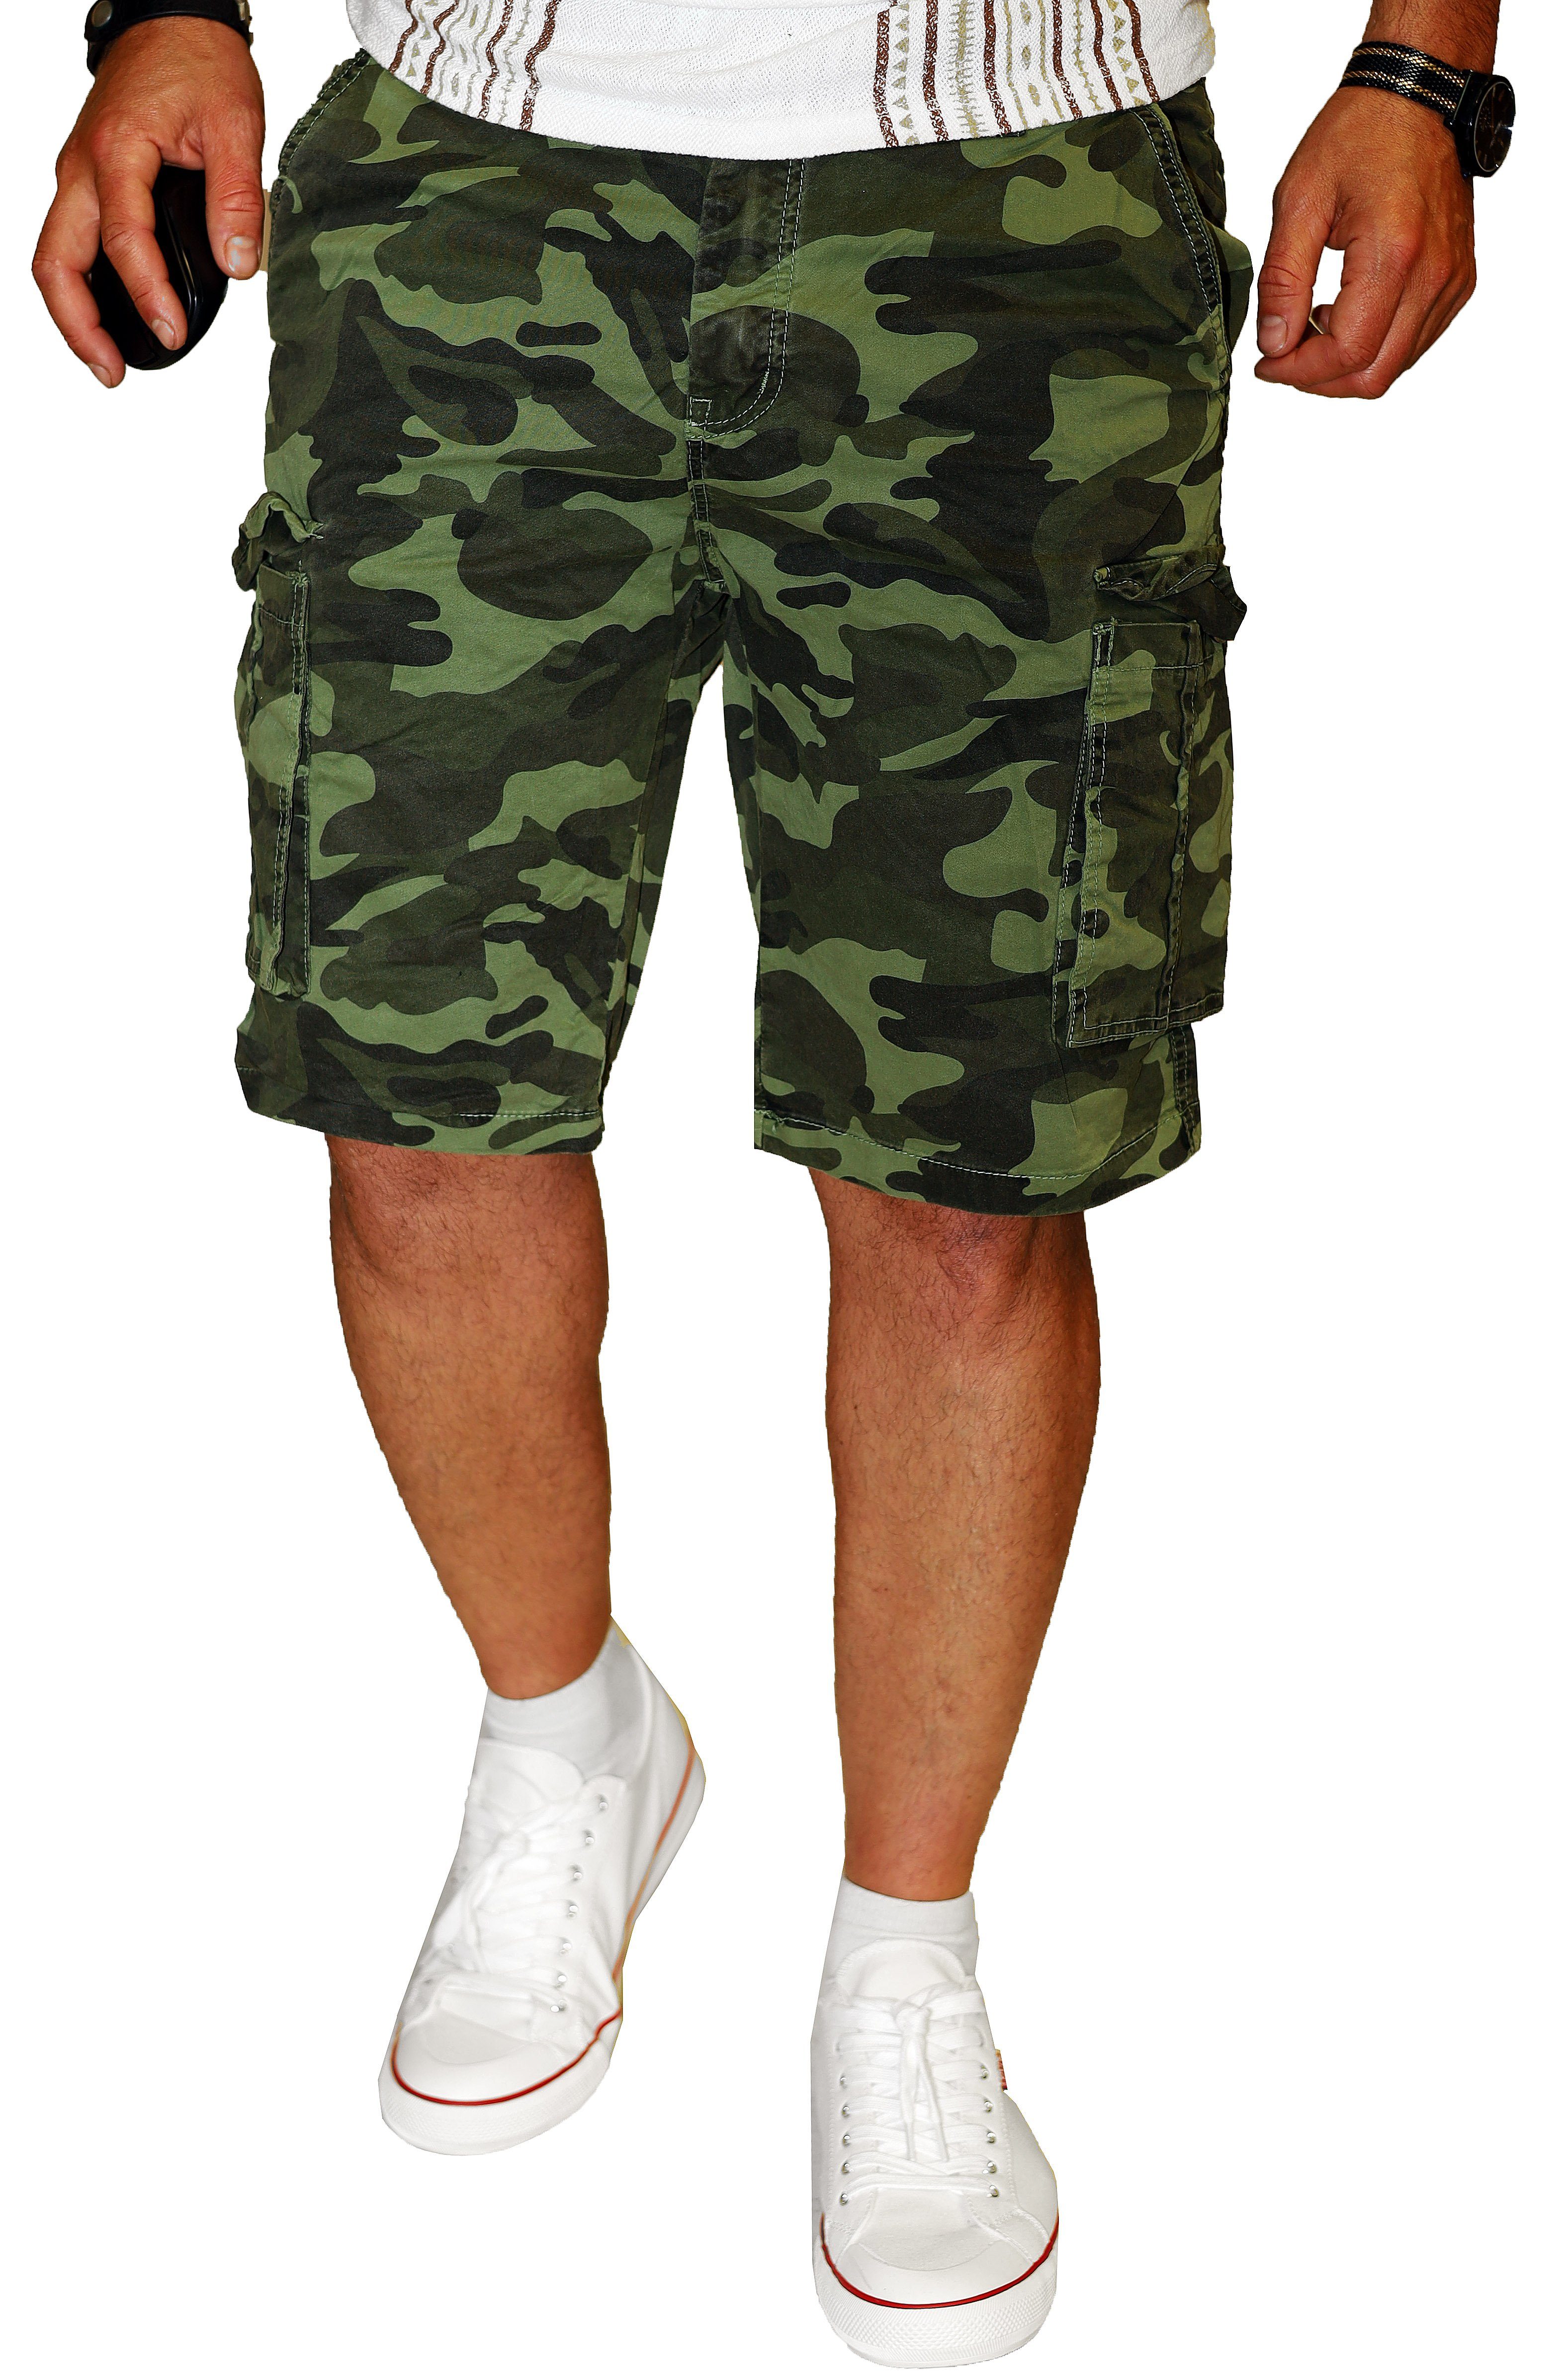 RMK Cargoshorts Herren Short Camouflage Bermuda kurze Hose Army Tarn Set in Tarnfarben, aus 100% Baumwolle Grün